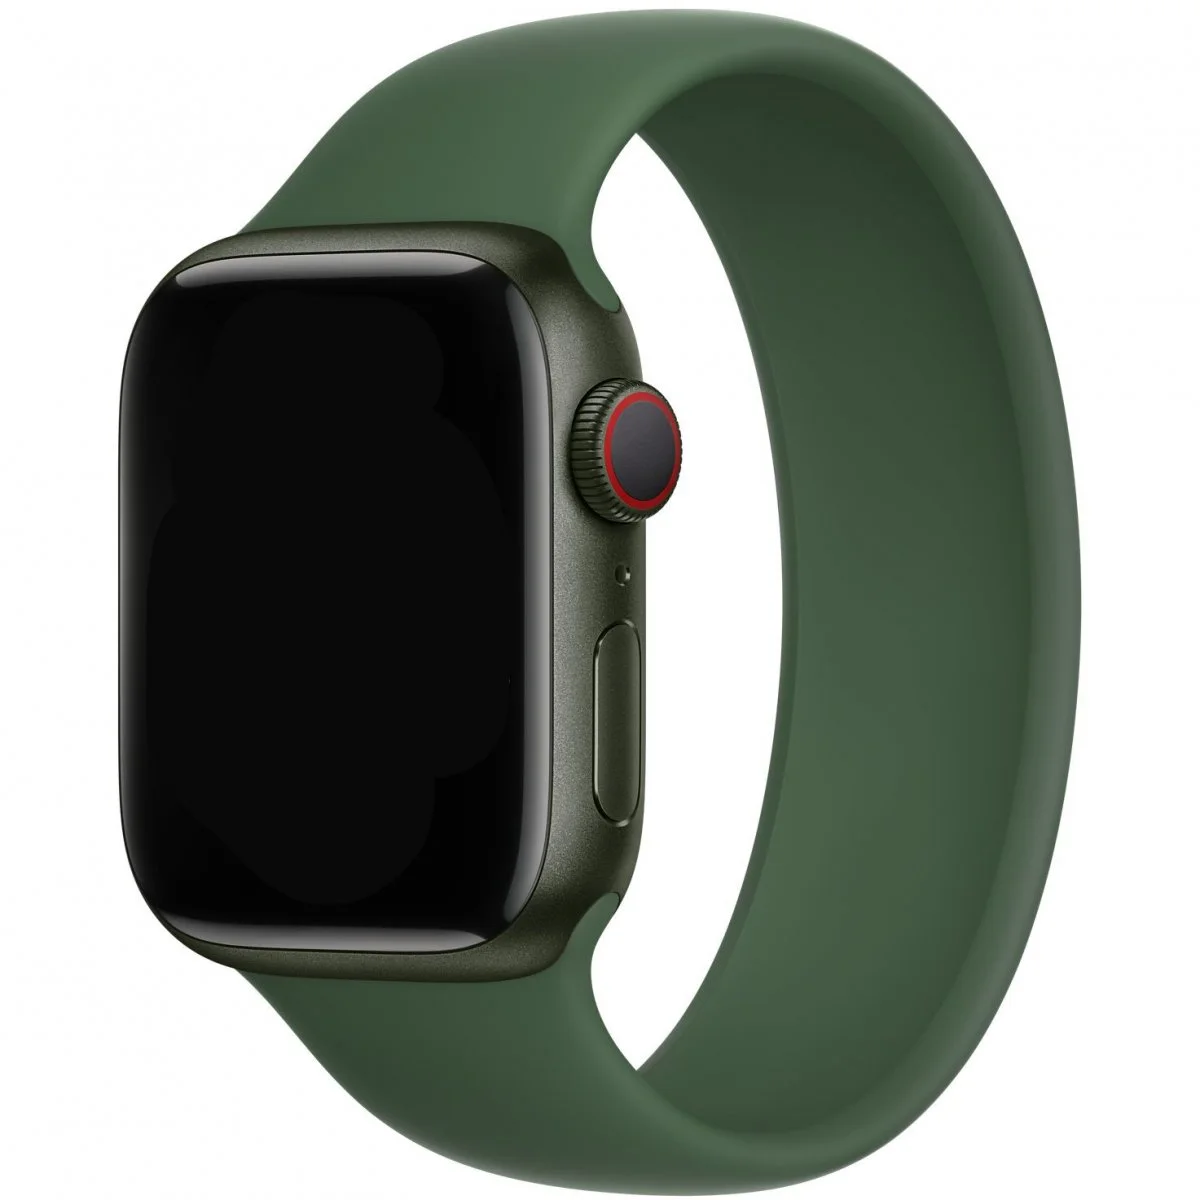 Řemínek iMore Solo Loop Apple Watch Series 1/2/3 42mm - Jetelově zelená (M)